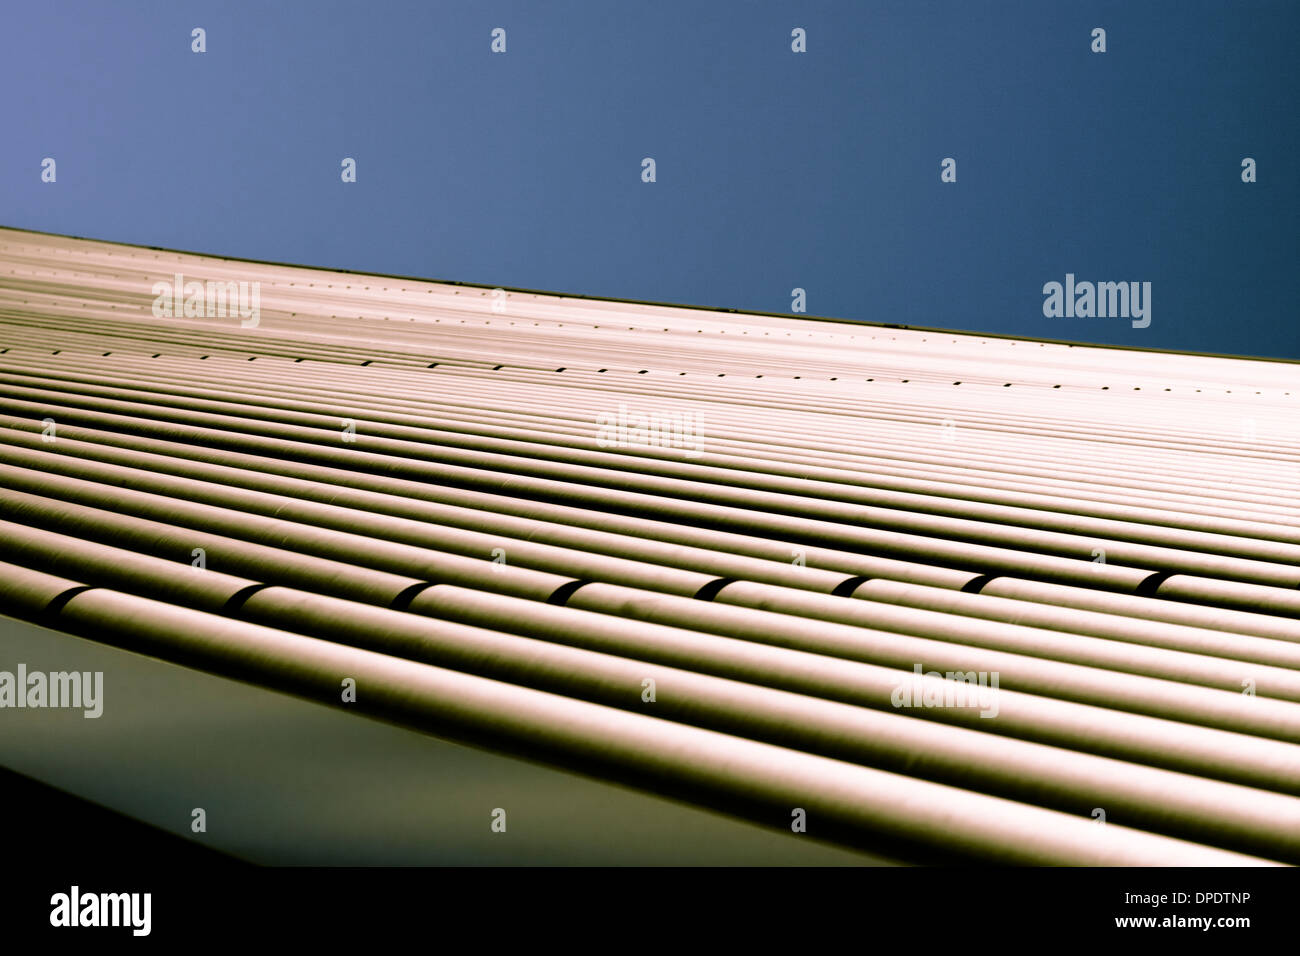 Abstrakte kreative getönten Foto von industriellen Metallrohre über wolkenloser blauer Himmel, einfachen Hintergrund mit Textfreiraum. Stockfoto